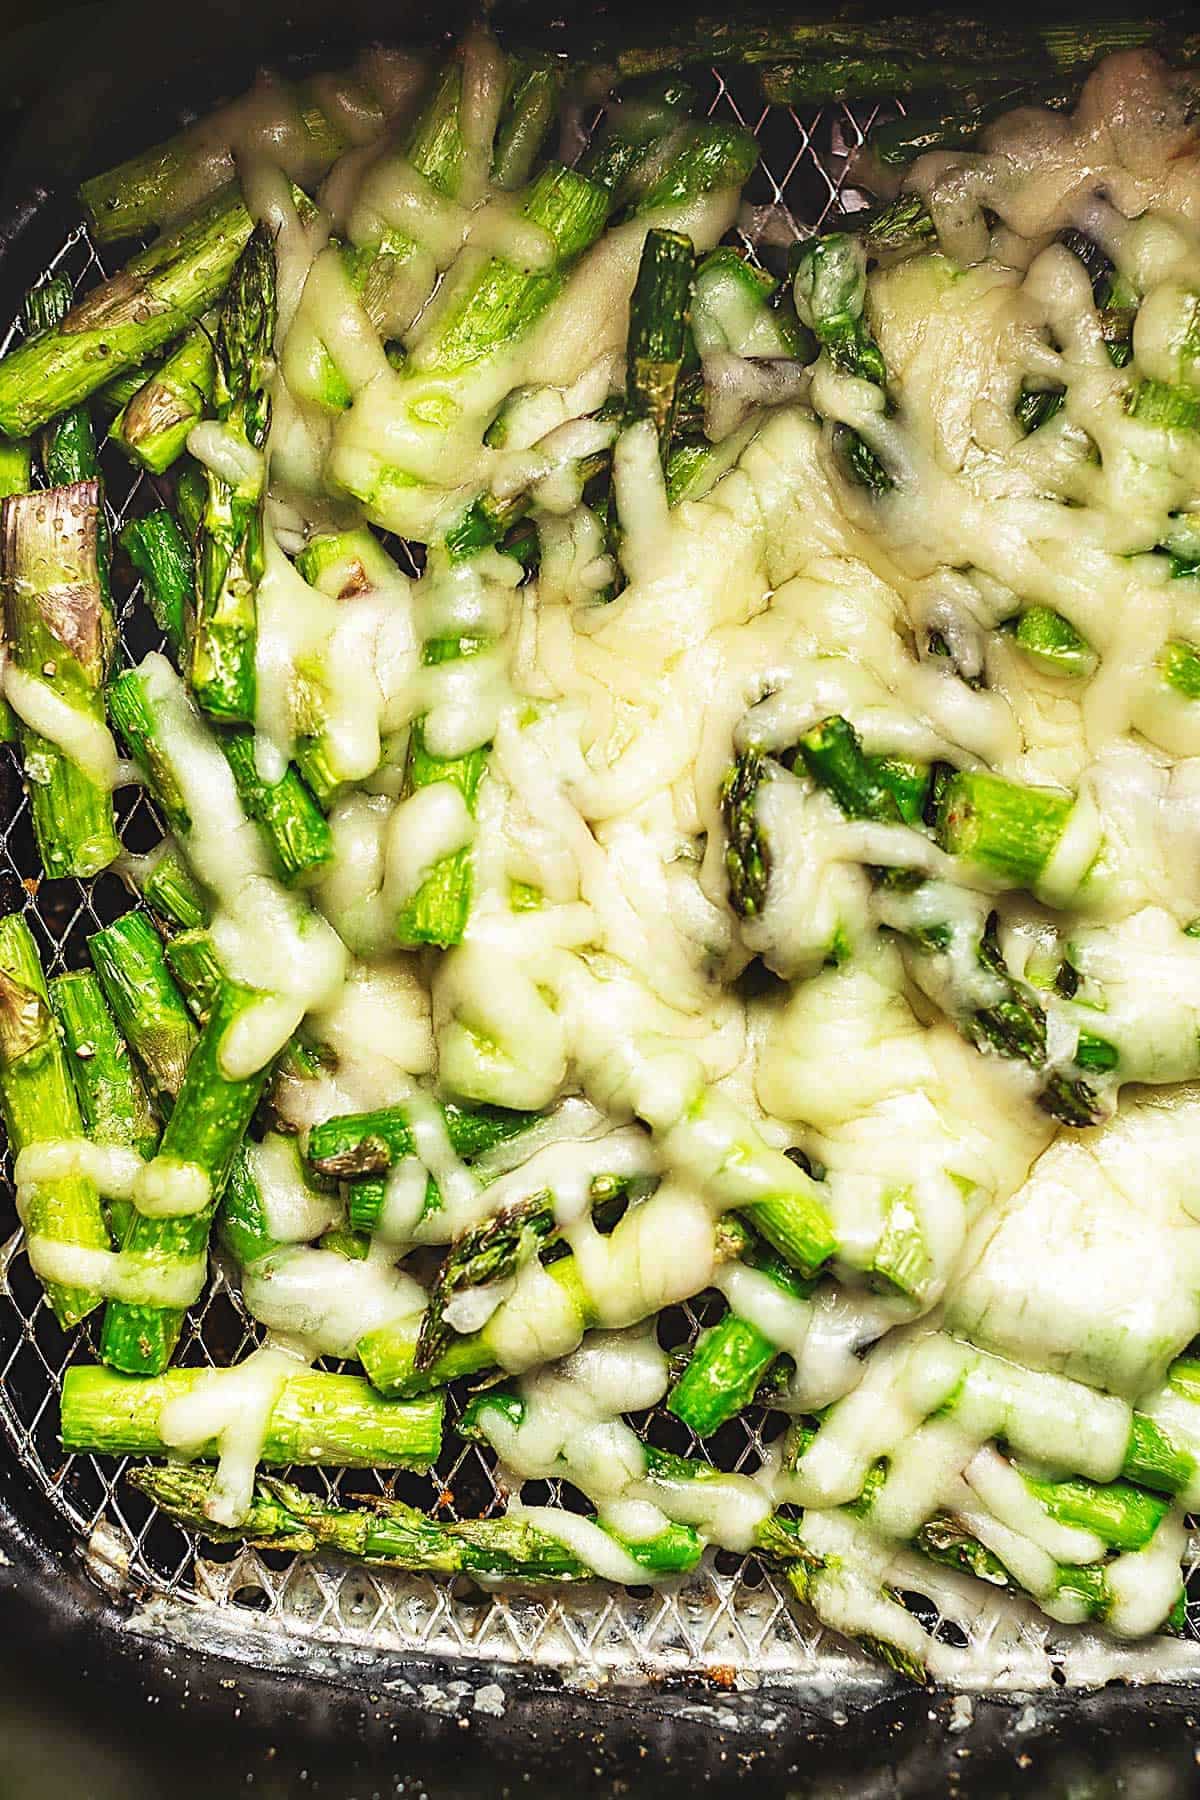 Cheesy air fryer asparagus